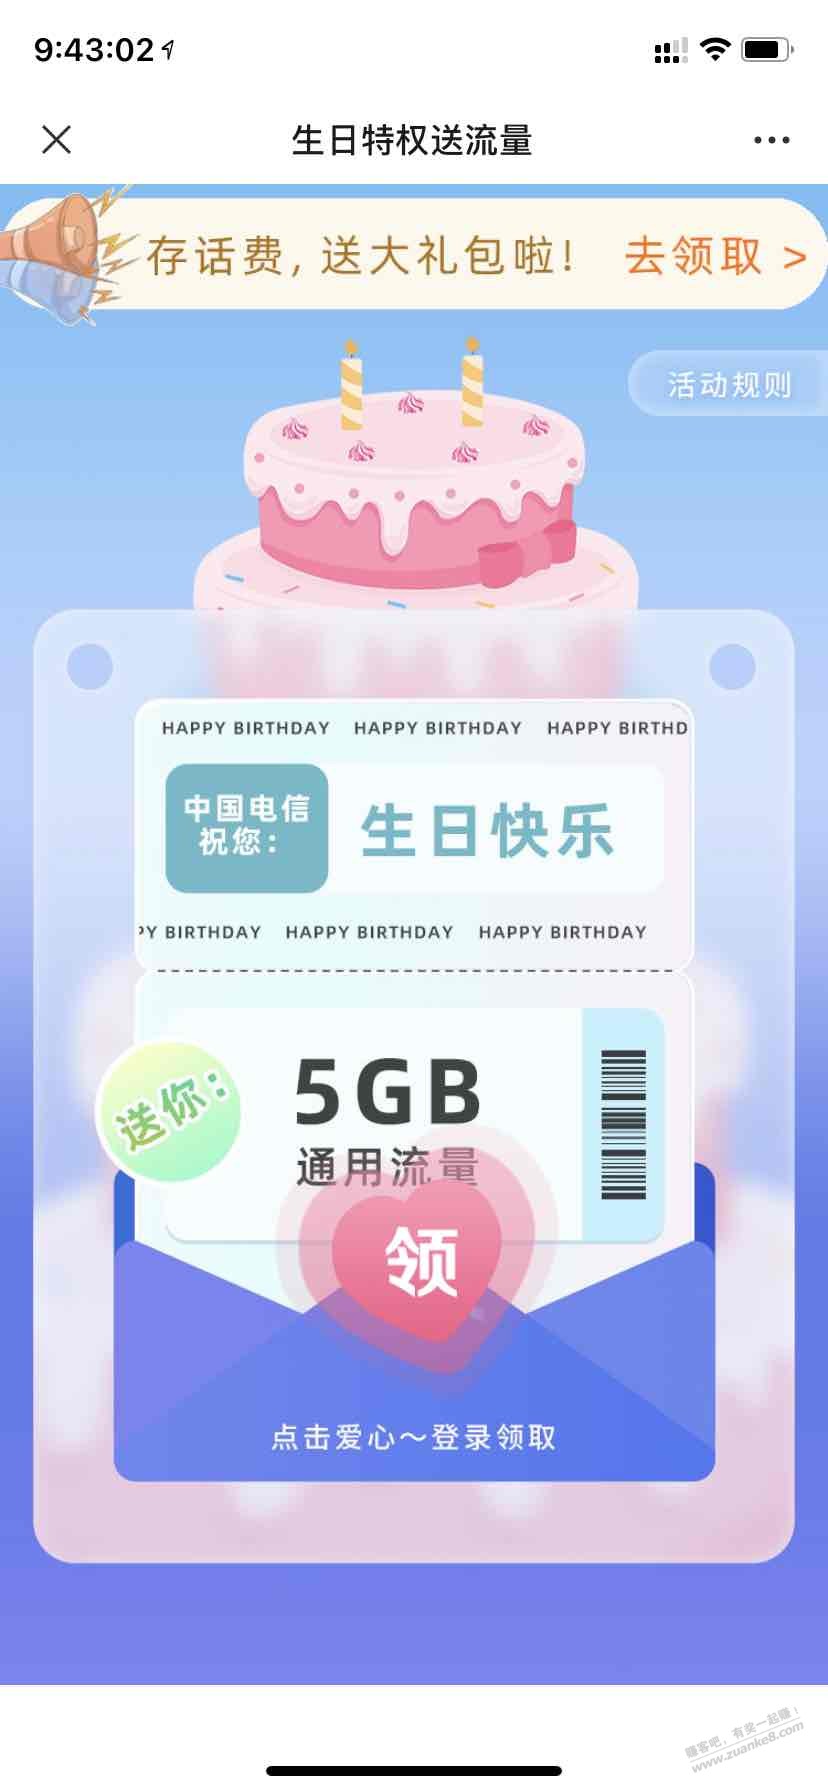 四川电信本月生日领5g流量（如图）-惠小助(52huixz.com)